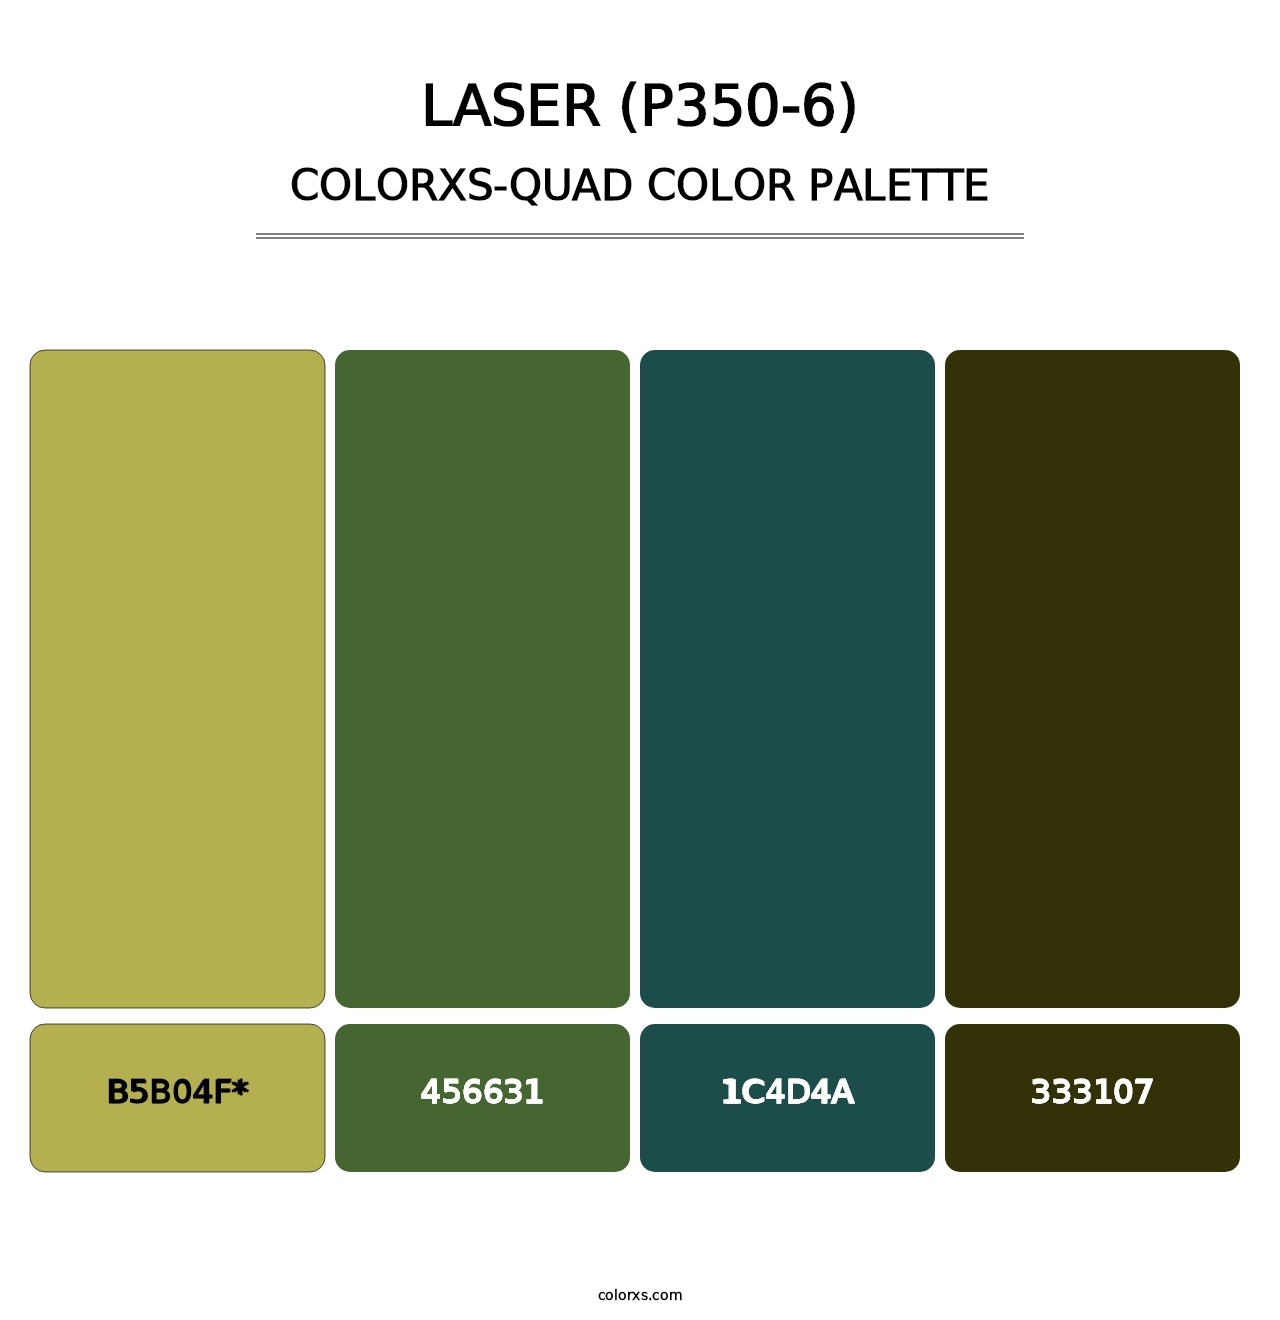 Laser (P350-6) - Colorxs Quad Palette